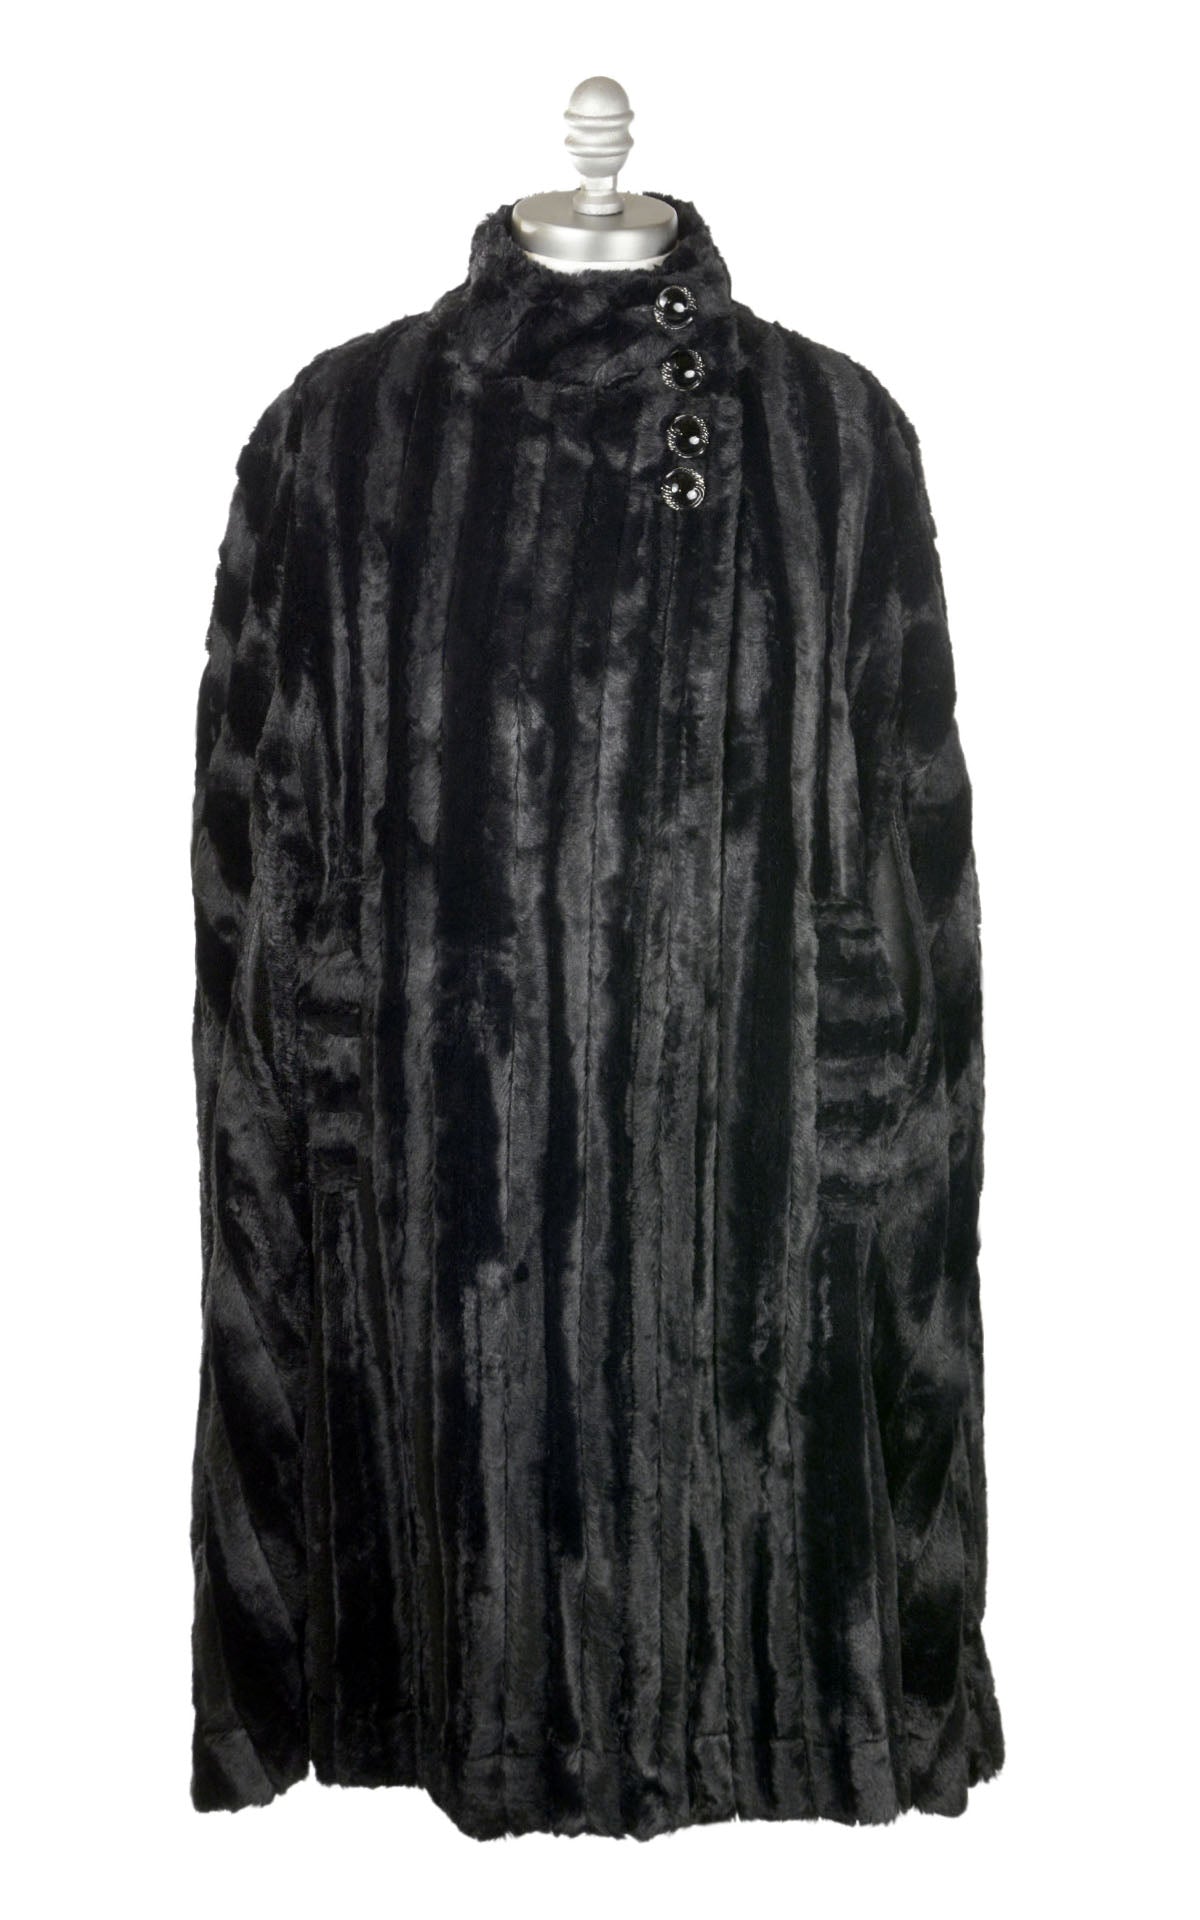 Long Cape | Minky Black Faux Fur | Handmade in Seattle WA USA by Pandemonium Millinery